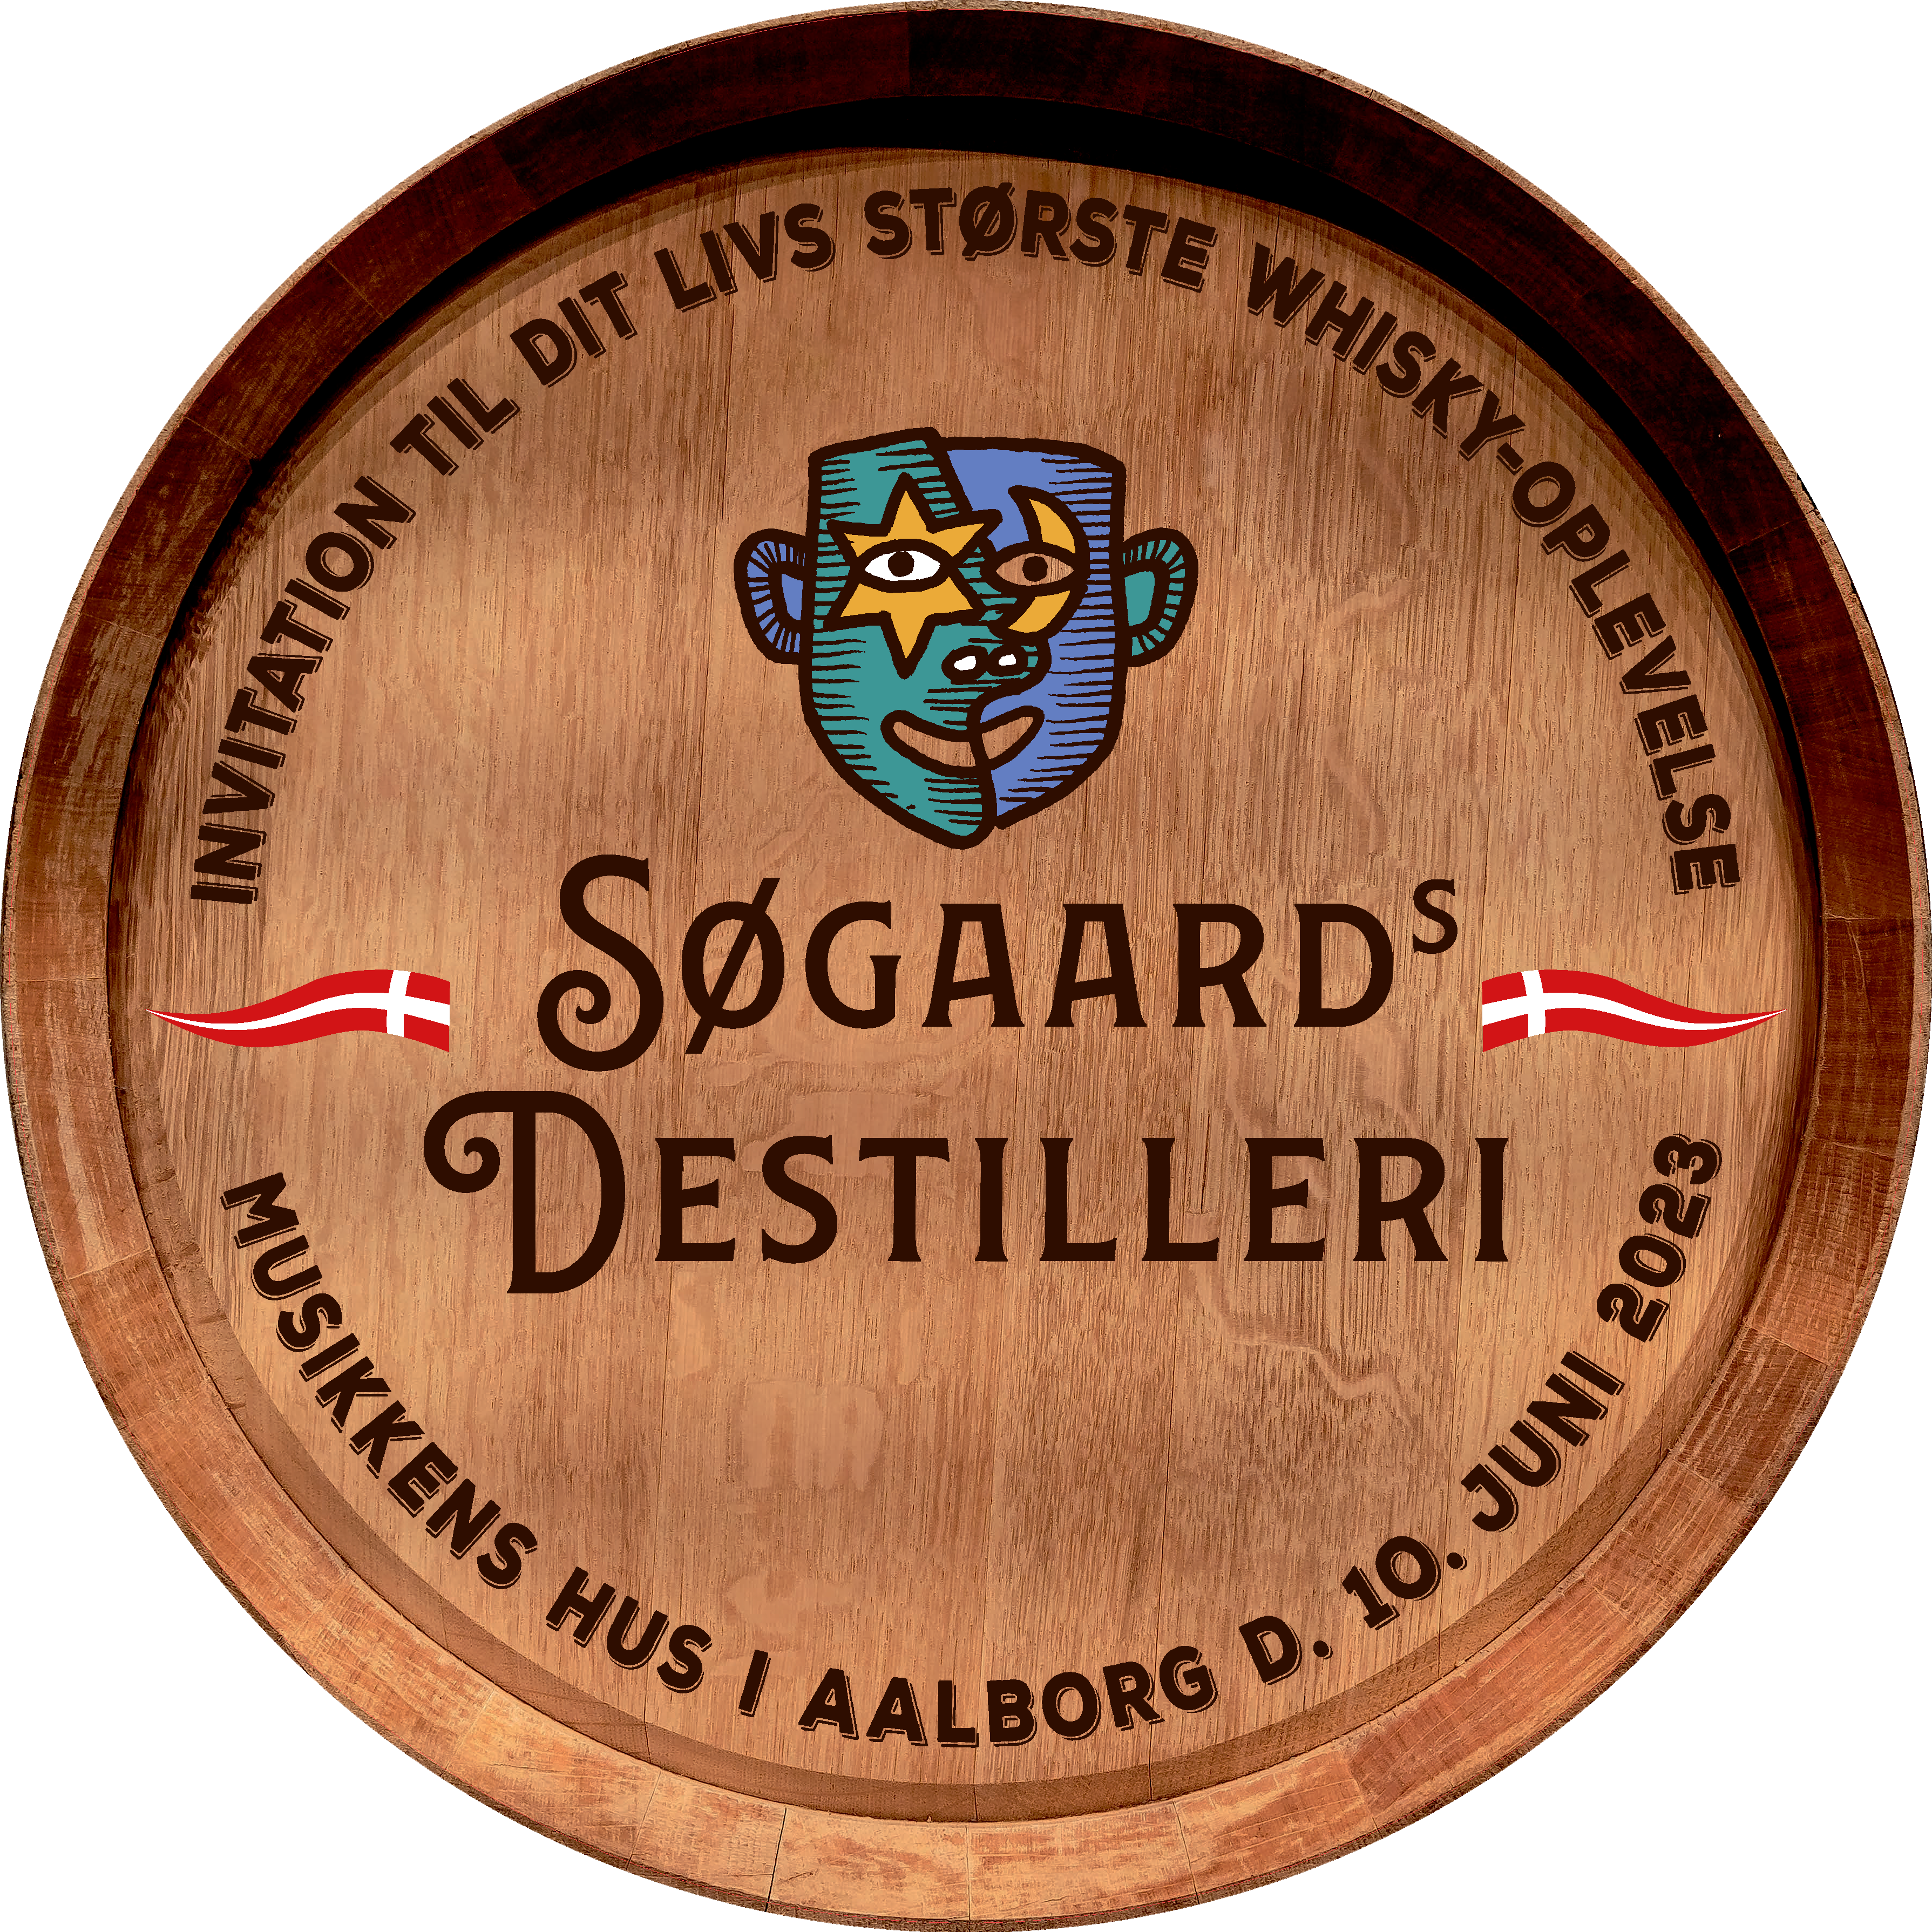 Søgaards Bryghus - vindbleast Whisky